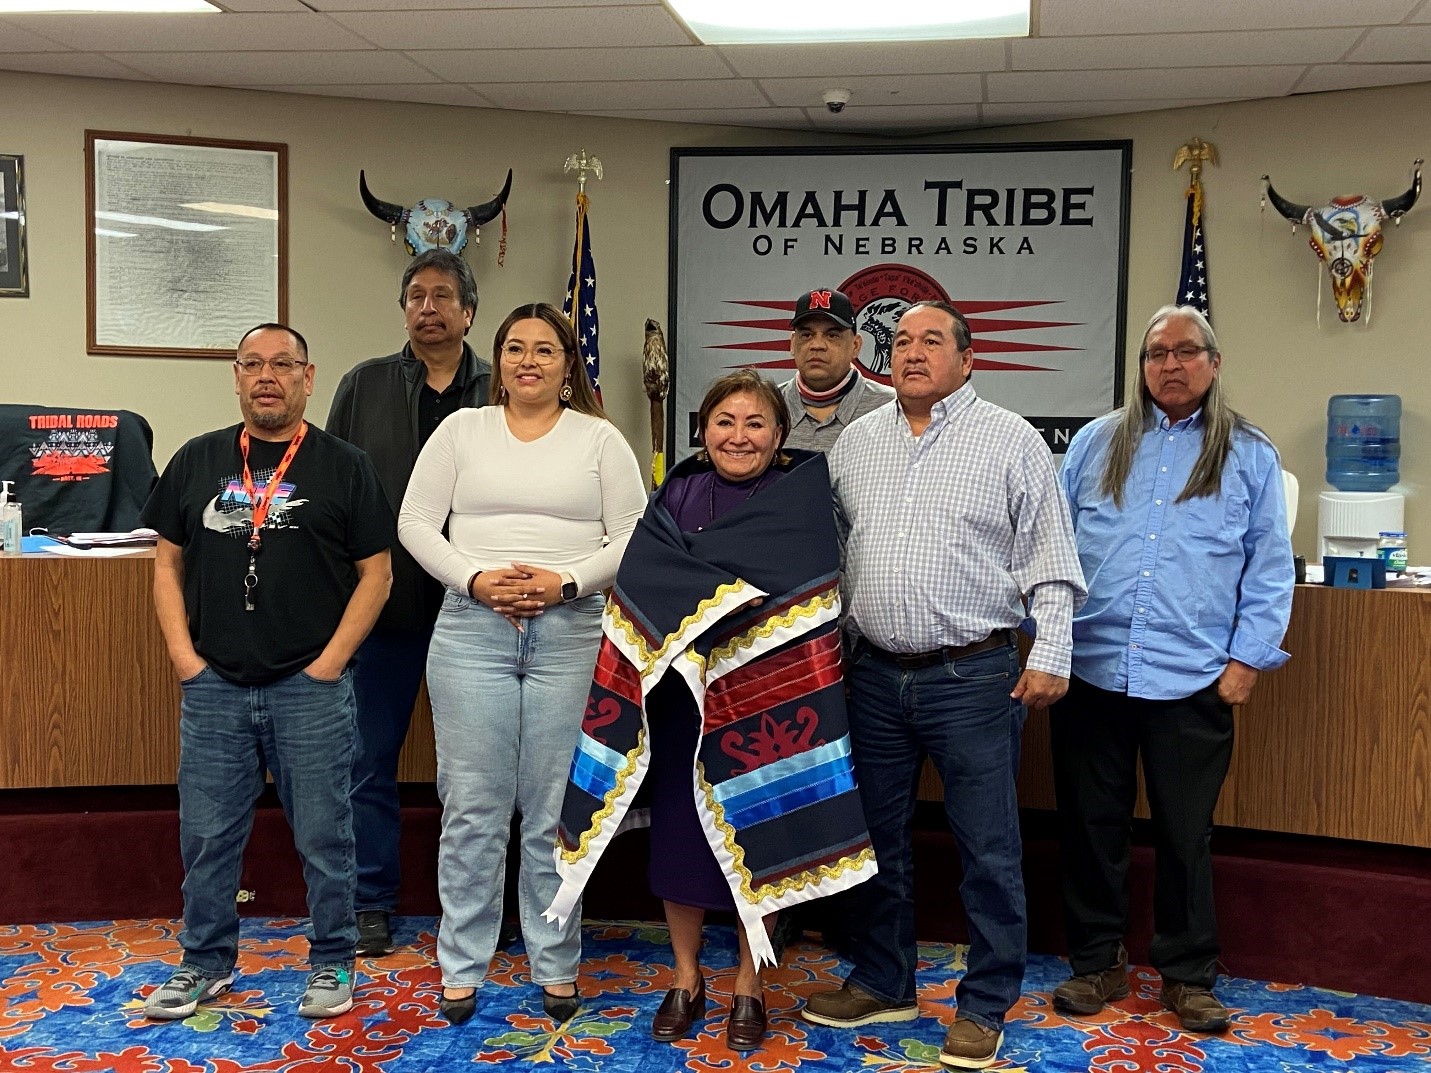 Visit with the Omaha Tribe of Nebraska in Macy, NE